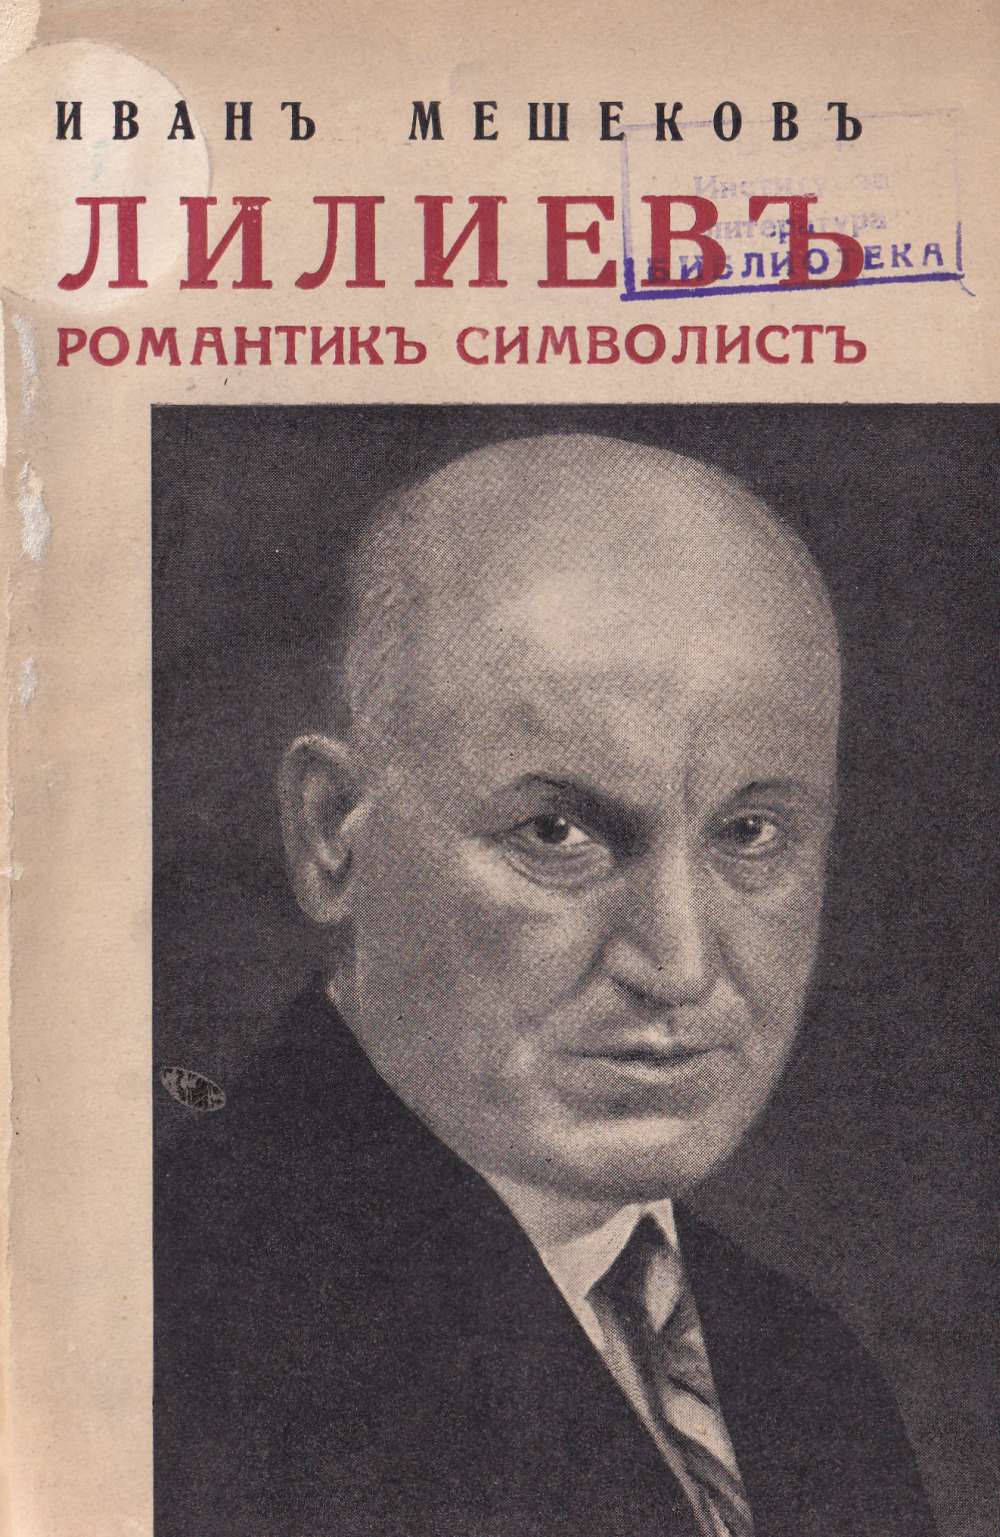 Николай Лилиев: романтик символист